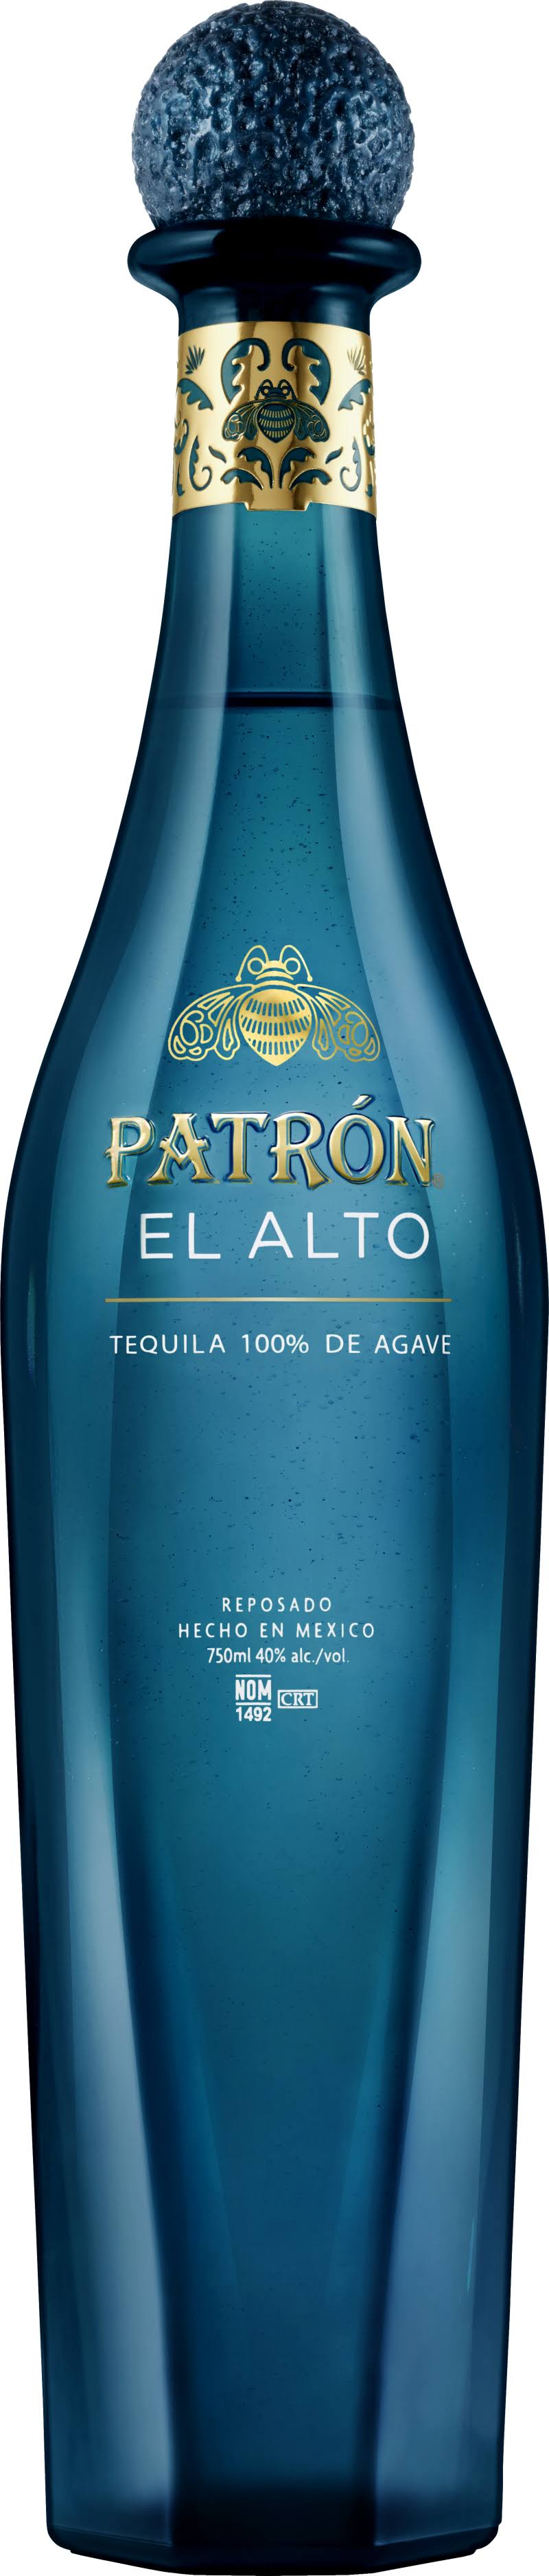 Patron El Alto Reposado Tequila / 750 ml